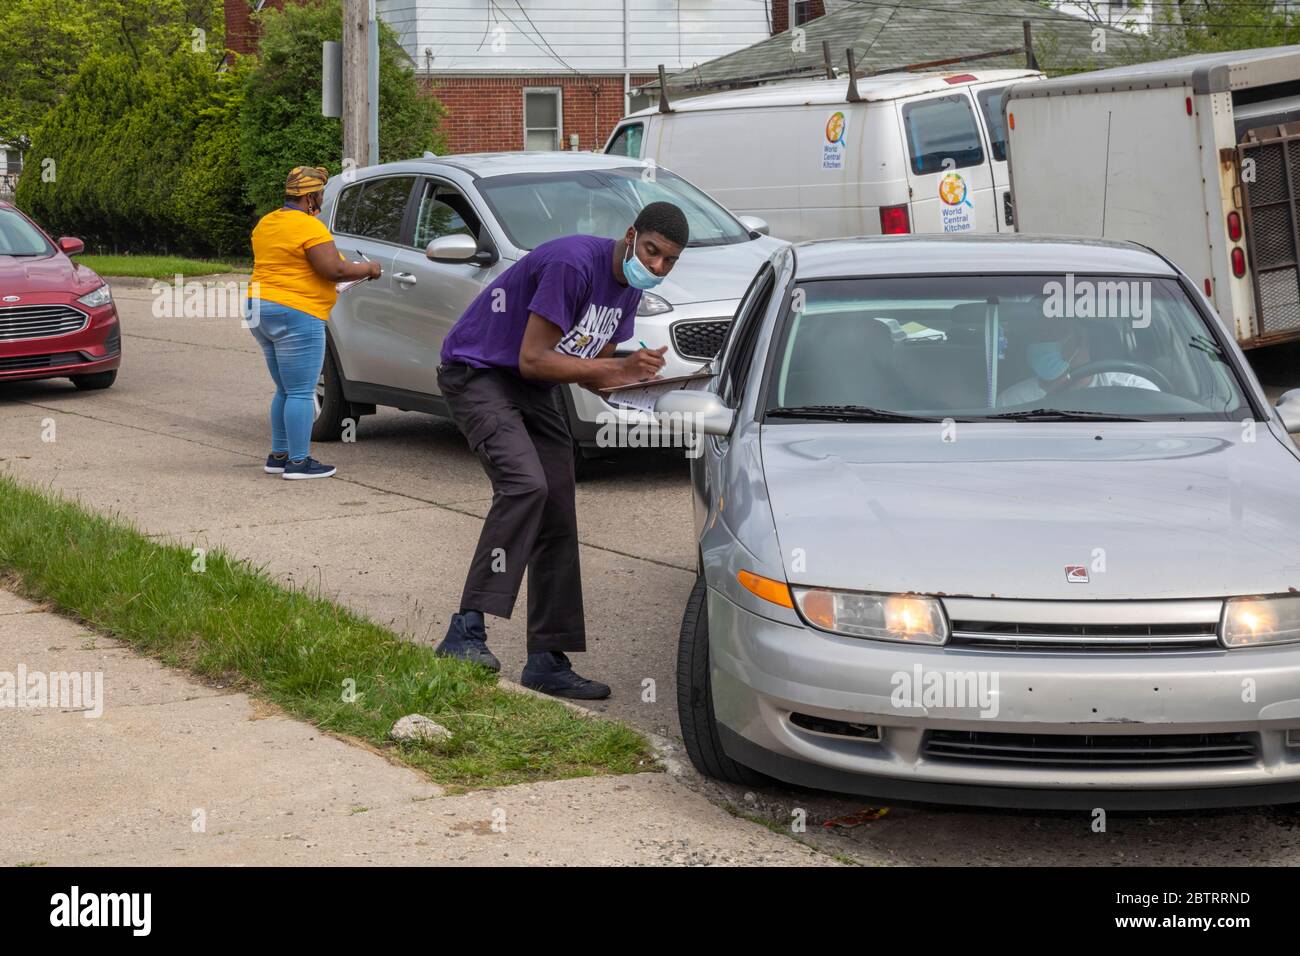 Detroit, Michigan - Freiwillige registrieren die Leute, um zu wählen, während sie für eine kostenlose Lebensmittelverteilung während der Coronavirus-Pandemie ankommen. Stockfoto